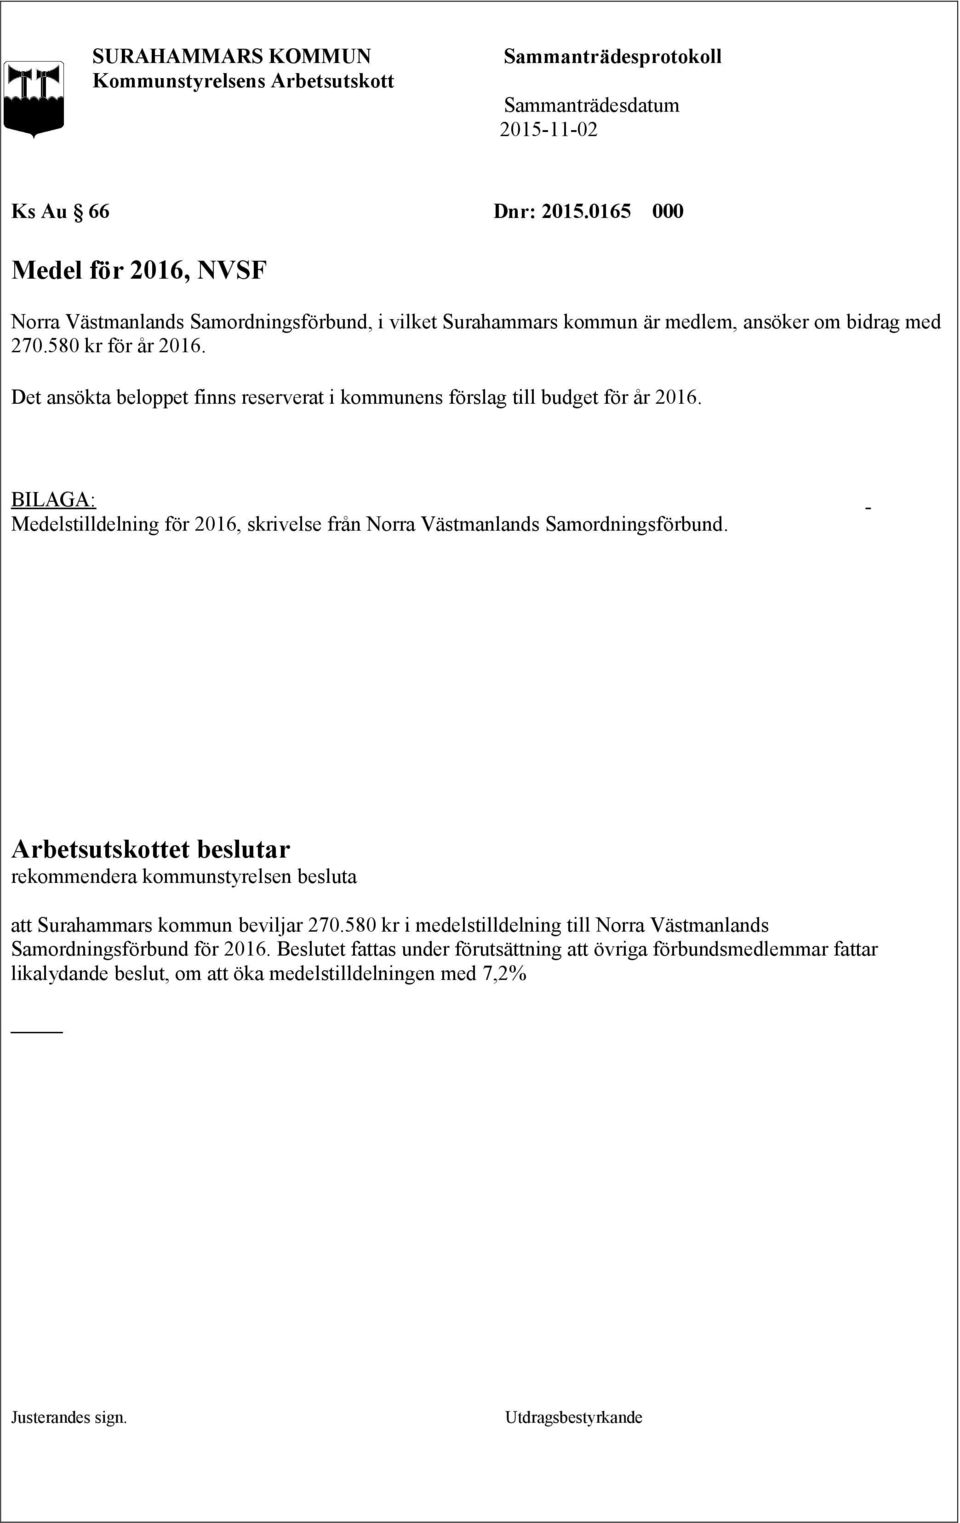 Medelstilldelning för 2016, skrivelse från Norra Västmanlands Samordningsförbund. rekommendera kommunstyrelsen besluta att Surahammars kommun beviljar 270.